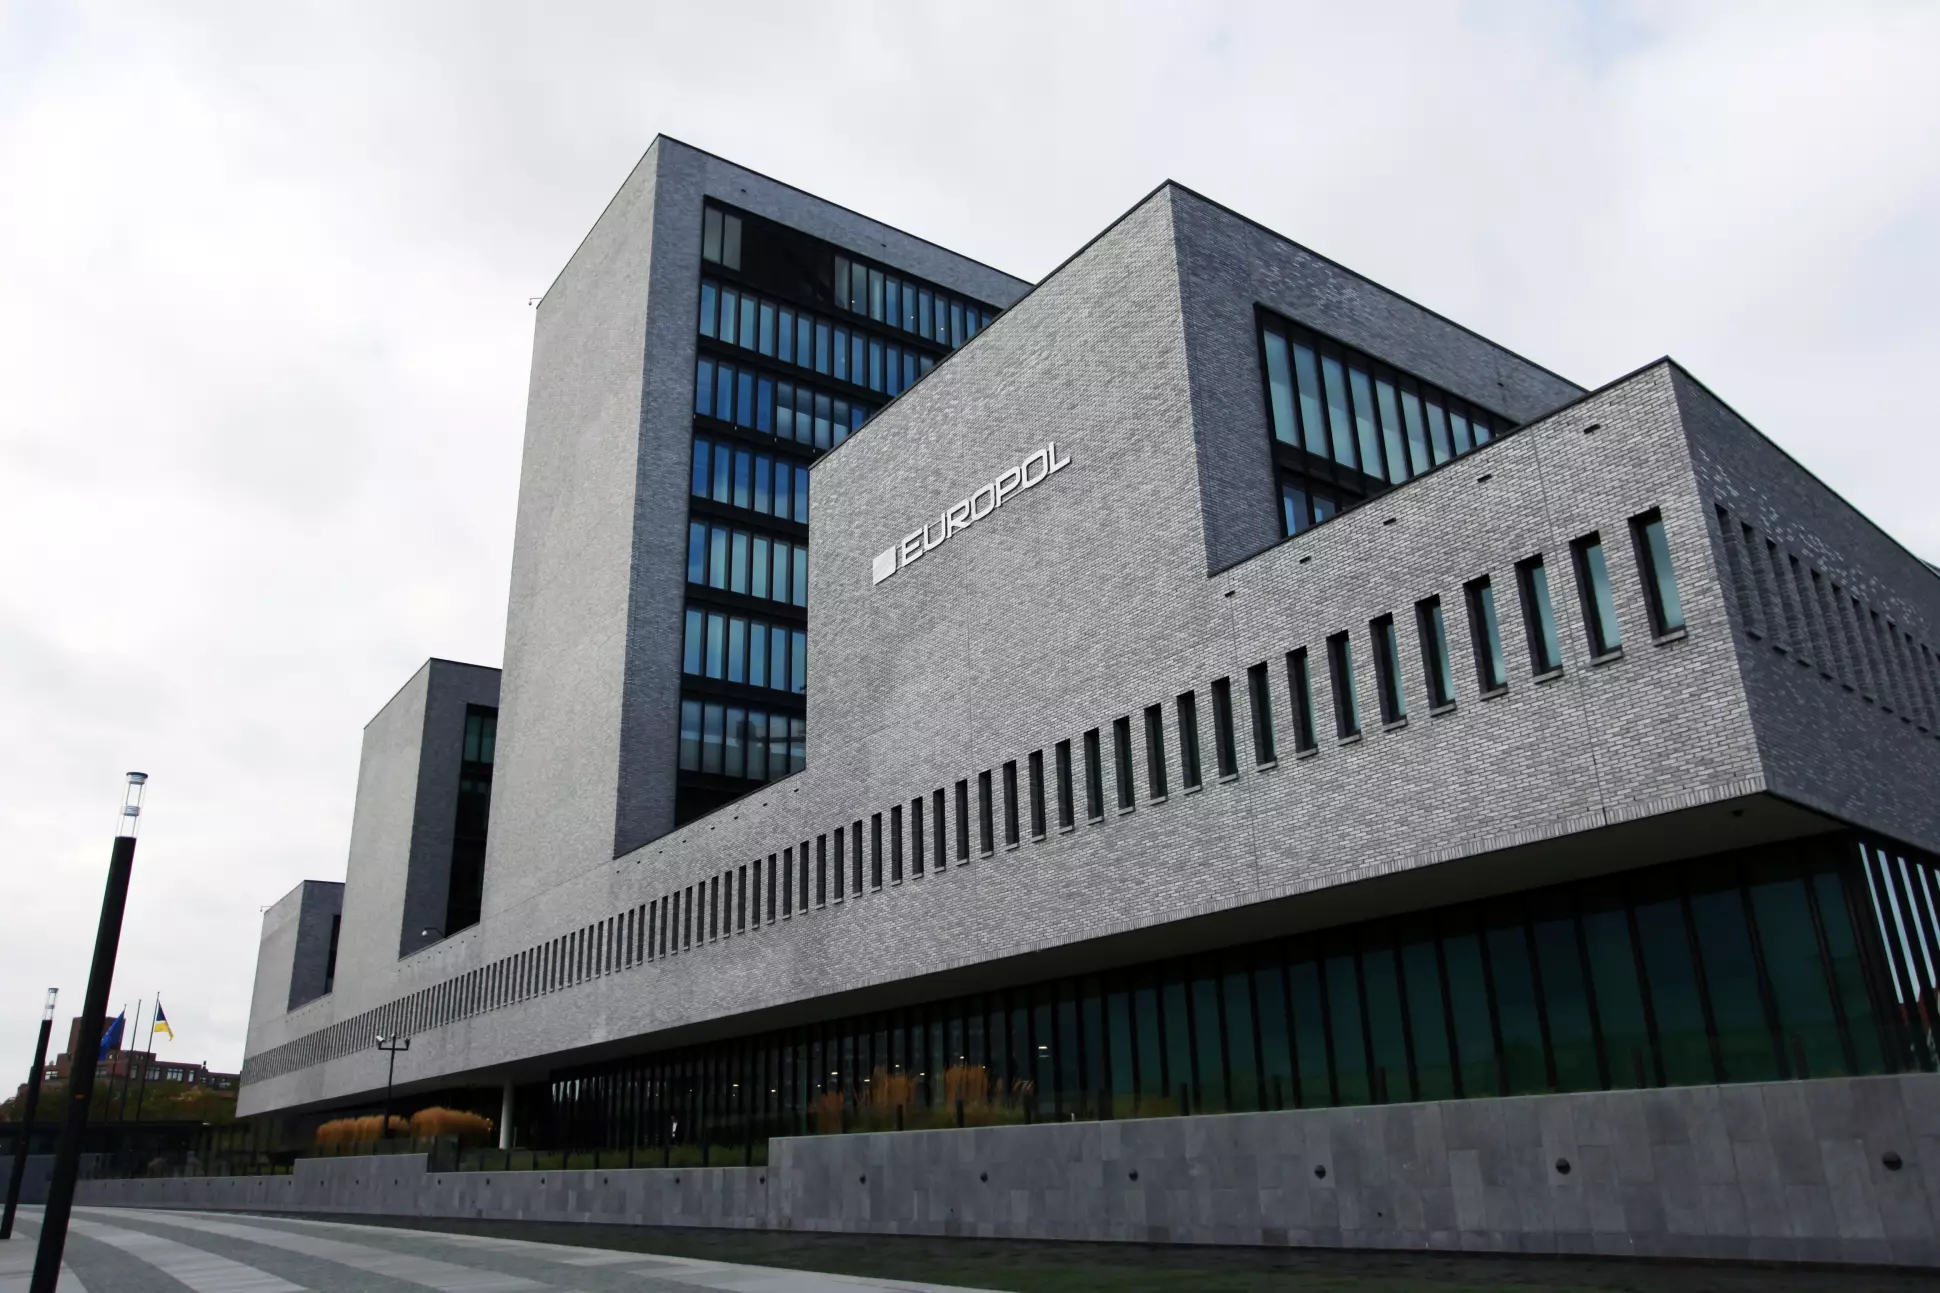 Die Europol-Zentrale im niederländischen Den Haag.